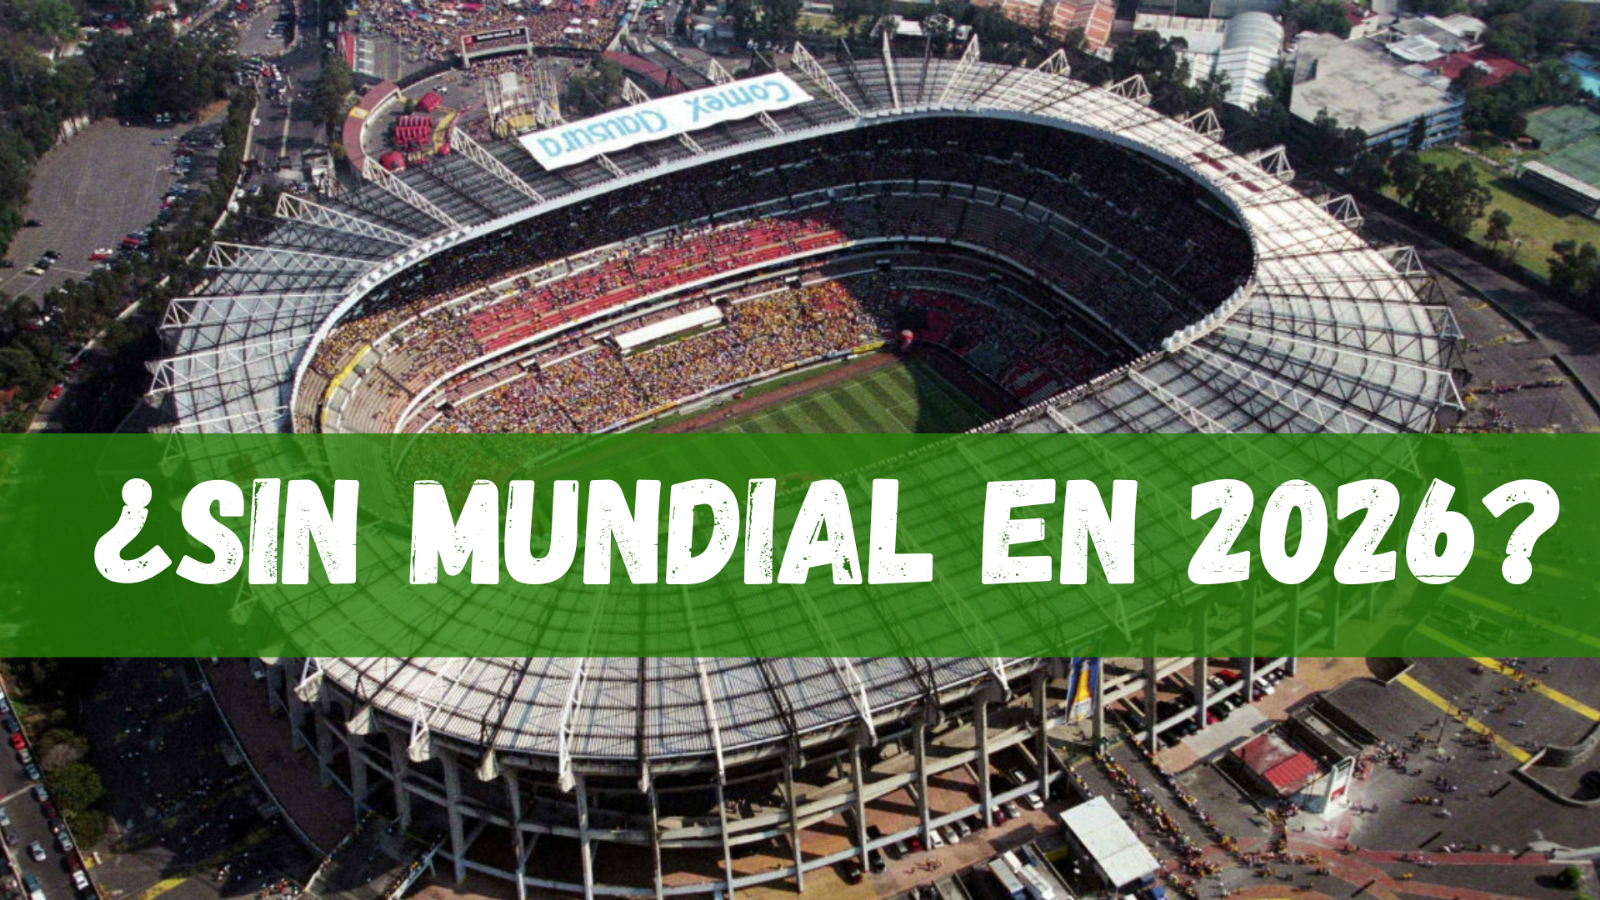 ¿EN RIESGO el partido INAUGURAL del Mundial de 2026 en el Estadio Azteca?